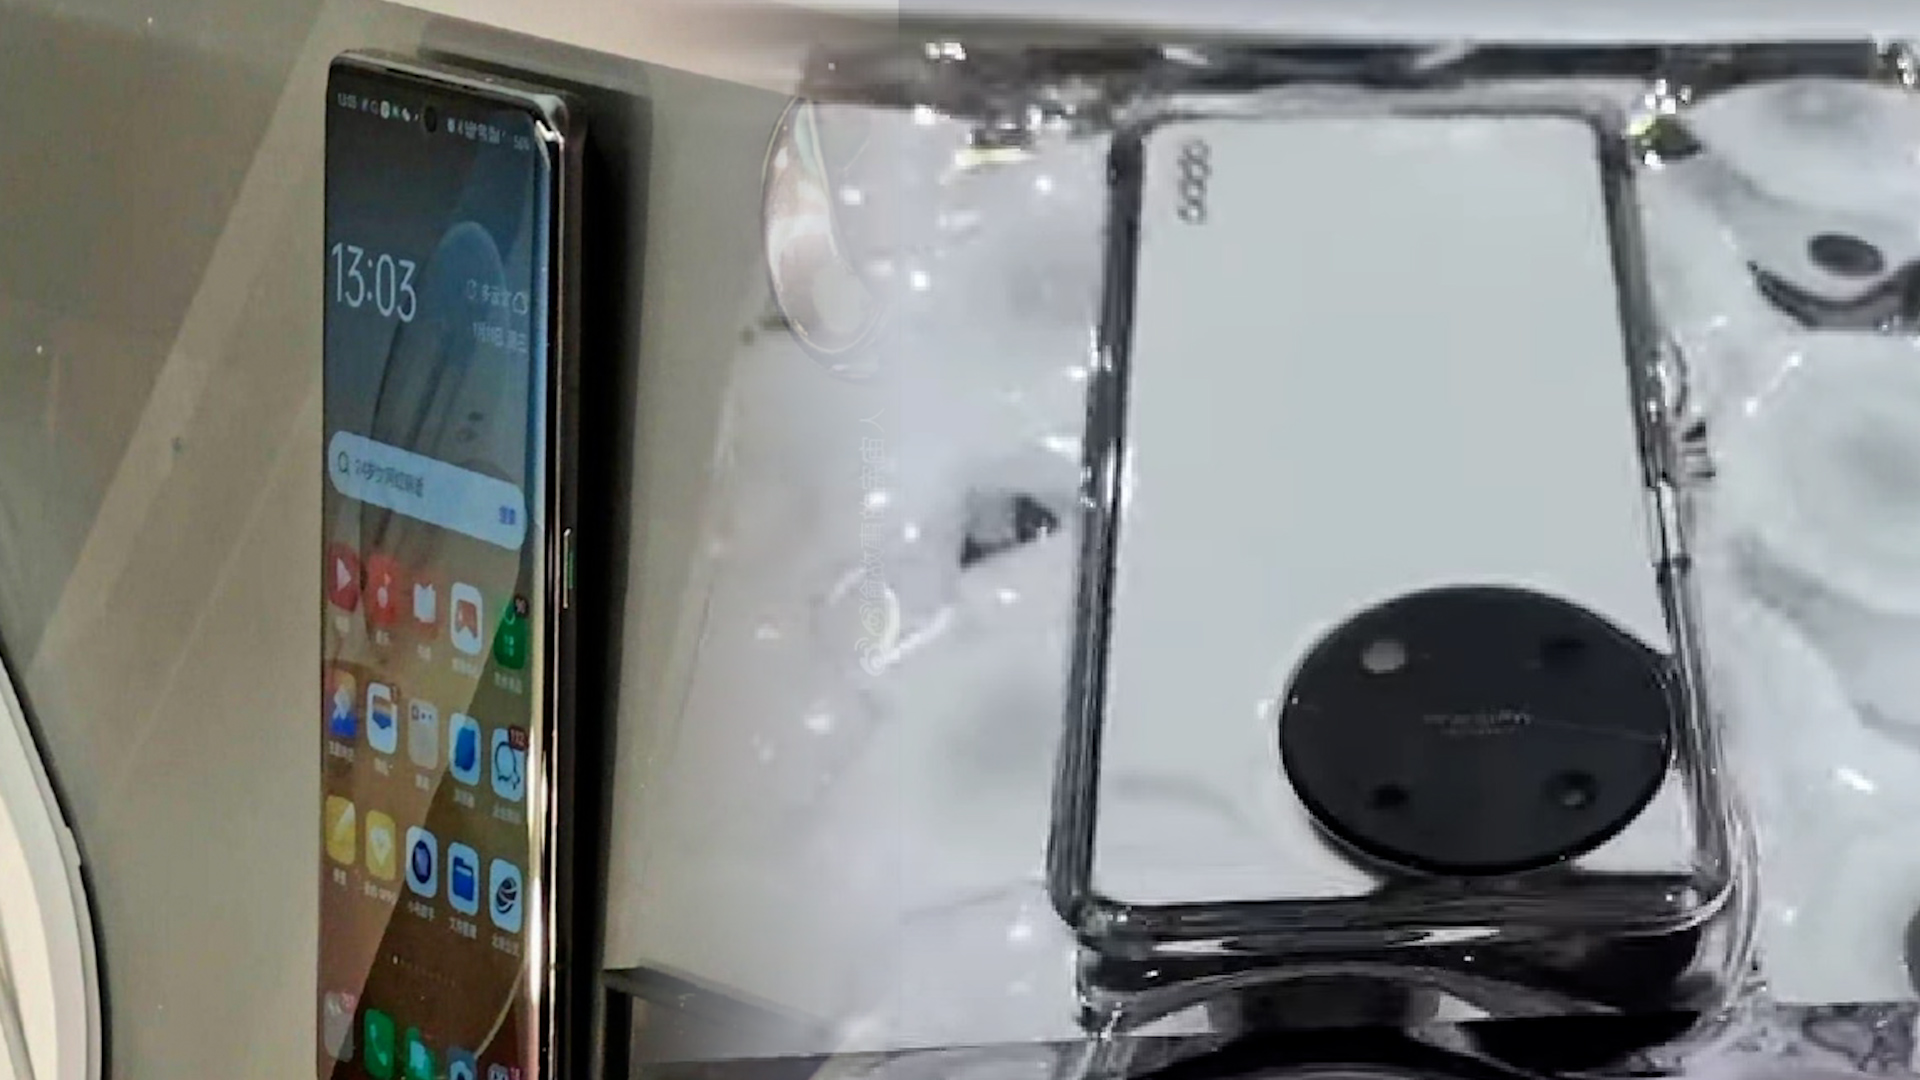 Ảnh thực tế OPPO Find X6 Pro: Thiết kế mới với mặt lưng da, camera